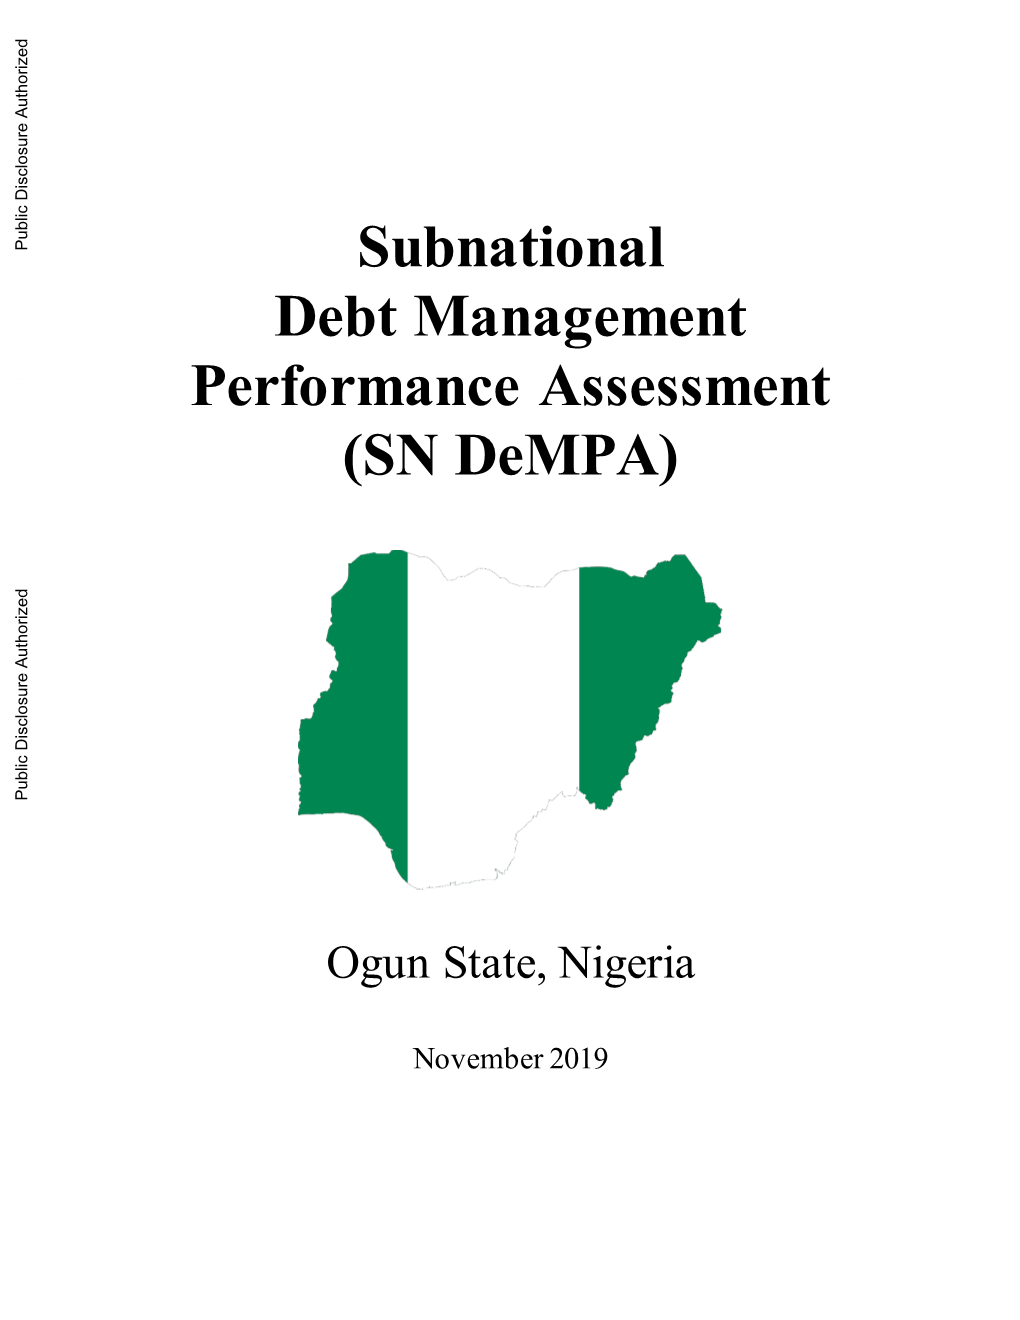 Subnational Debt Management Performance Assessment (SN Dempa)